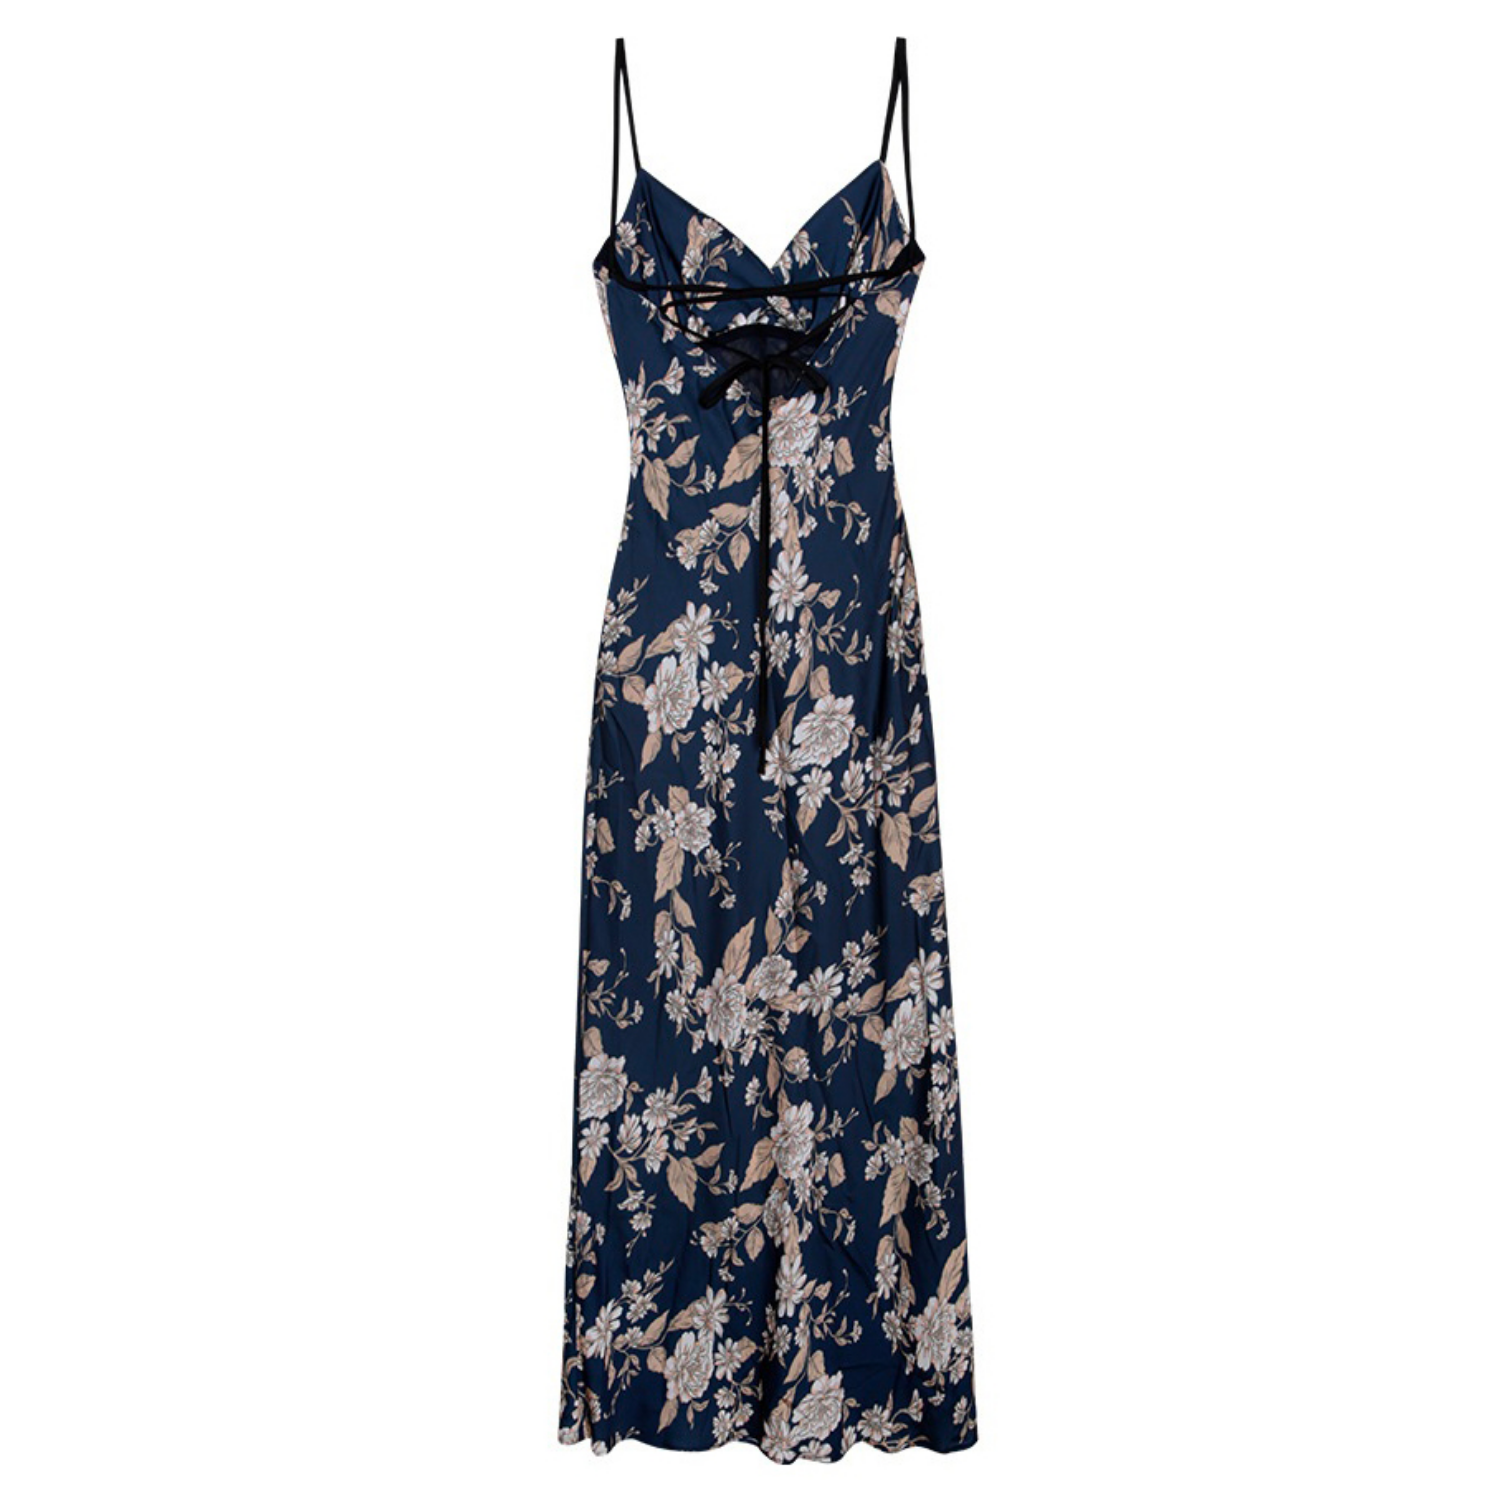 Printed Silken Camisole Dress - Navy Almond